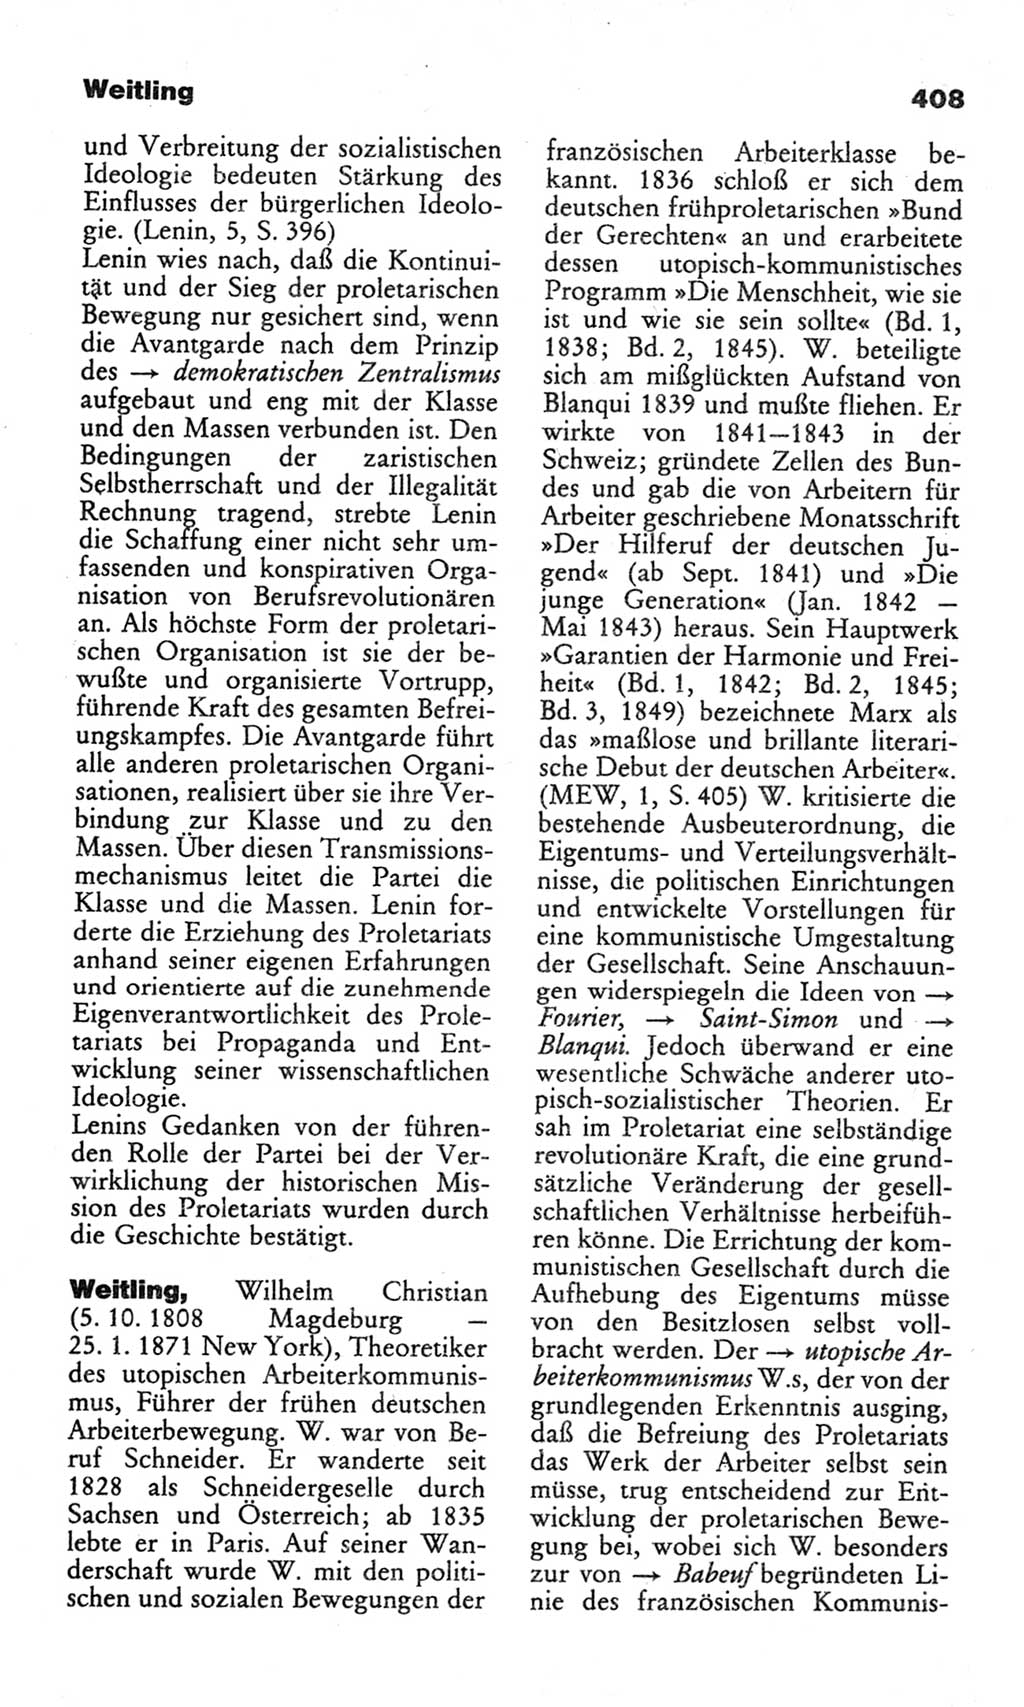 Wörterbuch des wissenschaftlichen Kommunismus [Deutsche Demokratische Republik (DDR)] 1982, Seite 408 (Wb. wiss. Komm. DDR 1982, S. 408)